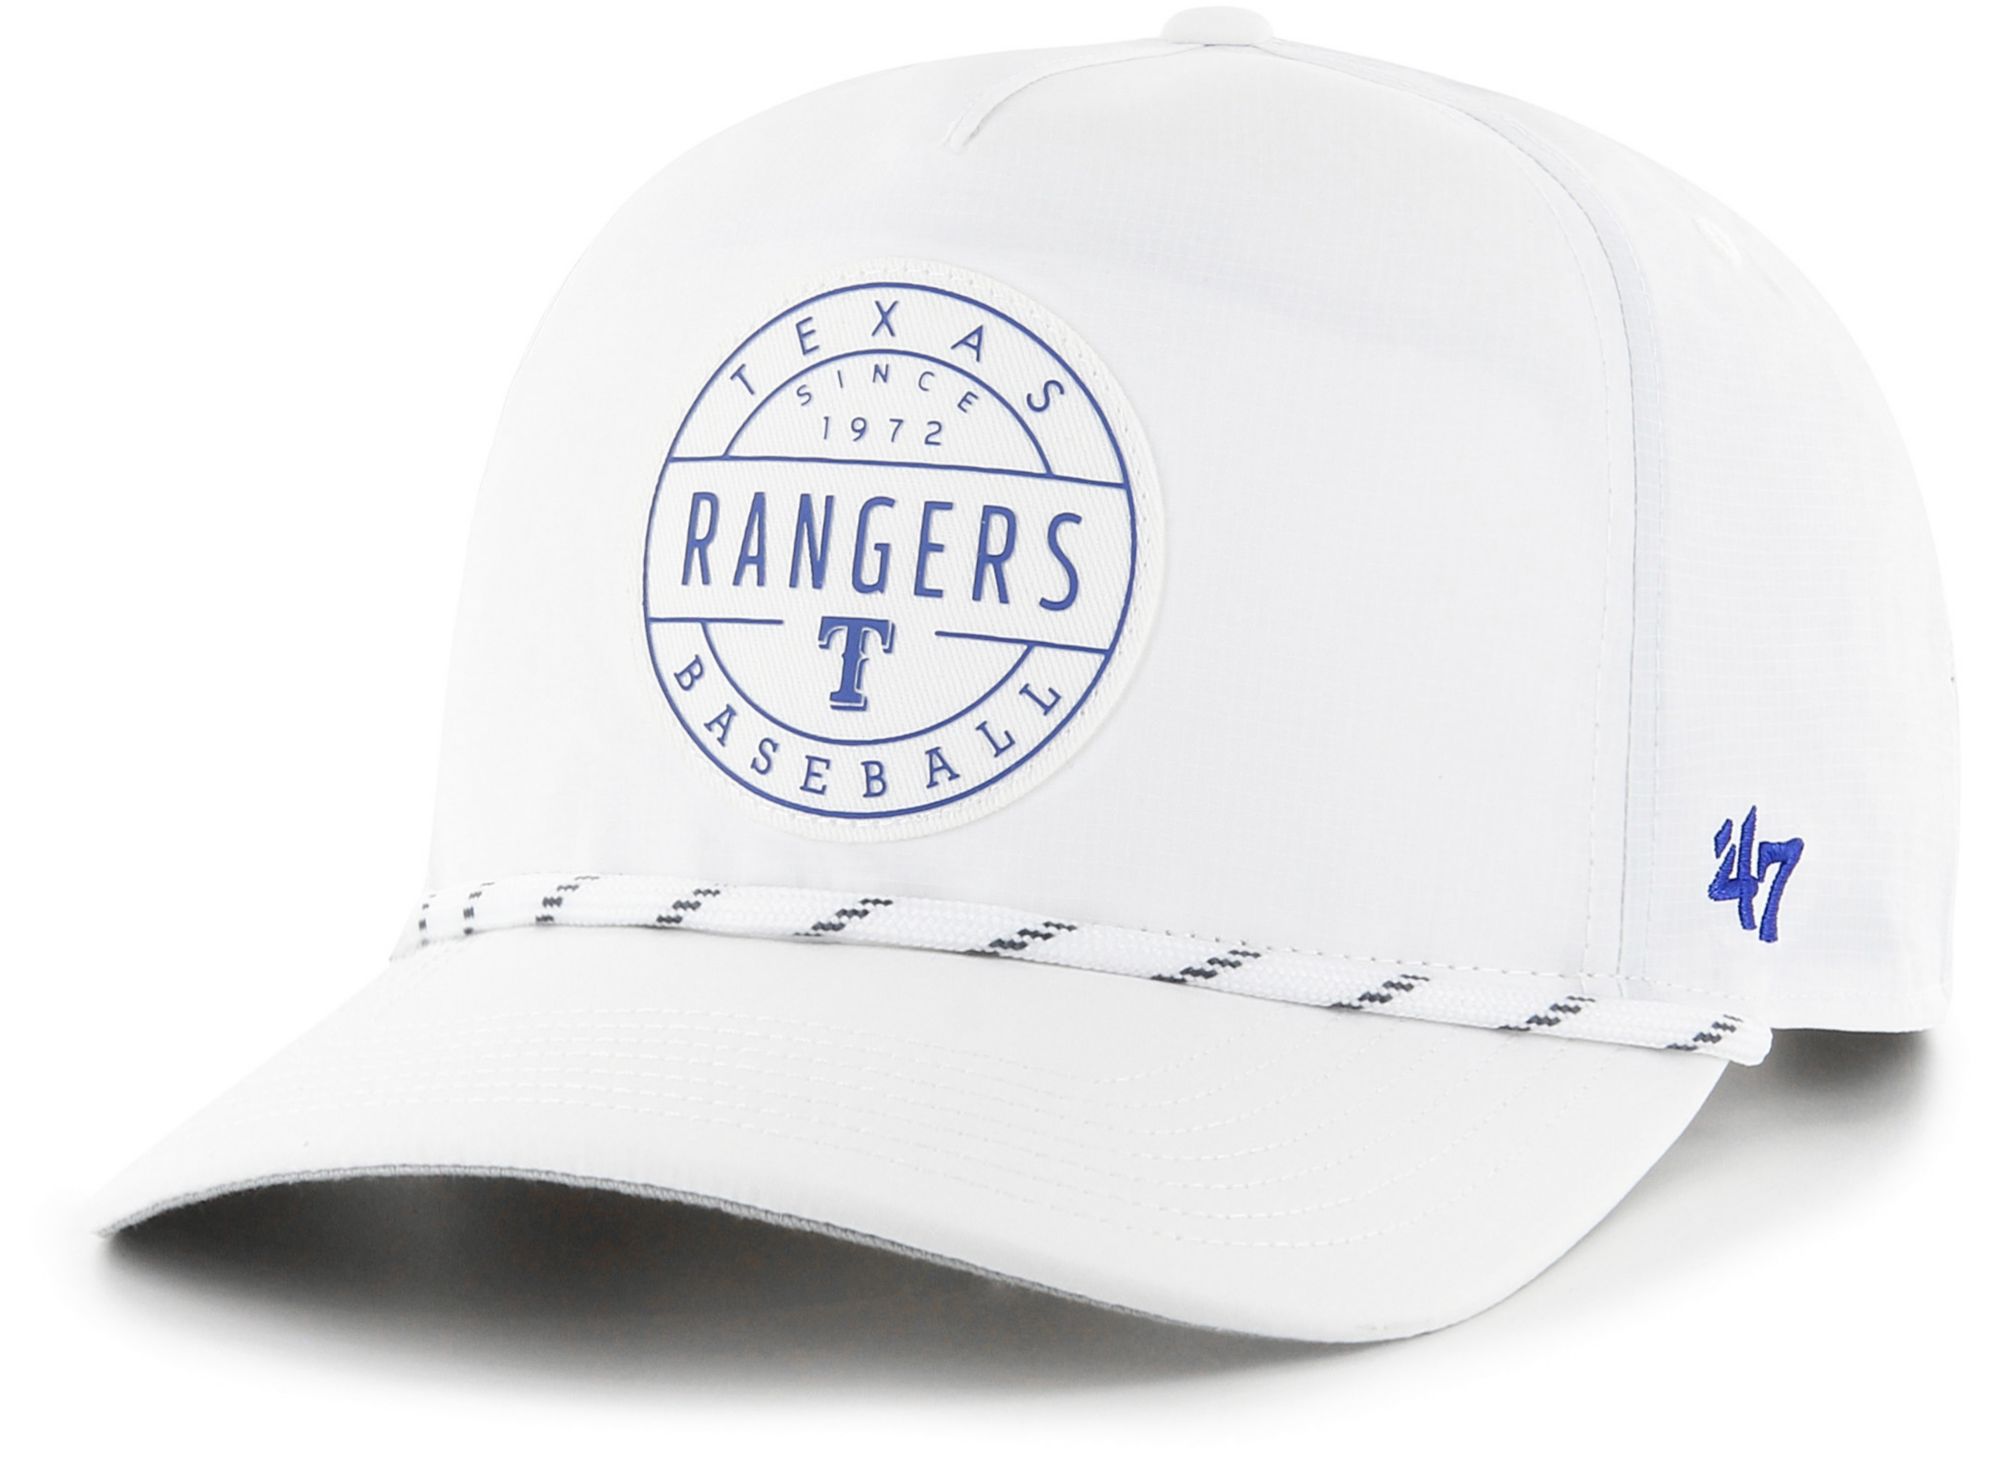 47 Texas Rangers Hat - Men's Hats in Camo